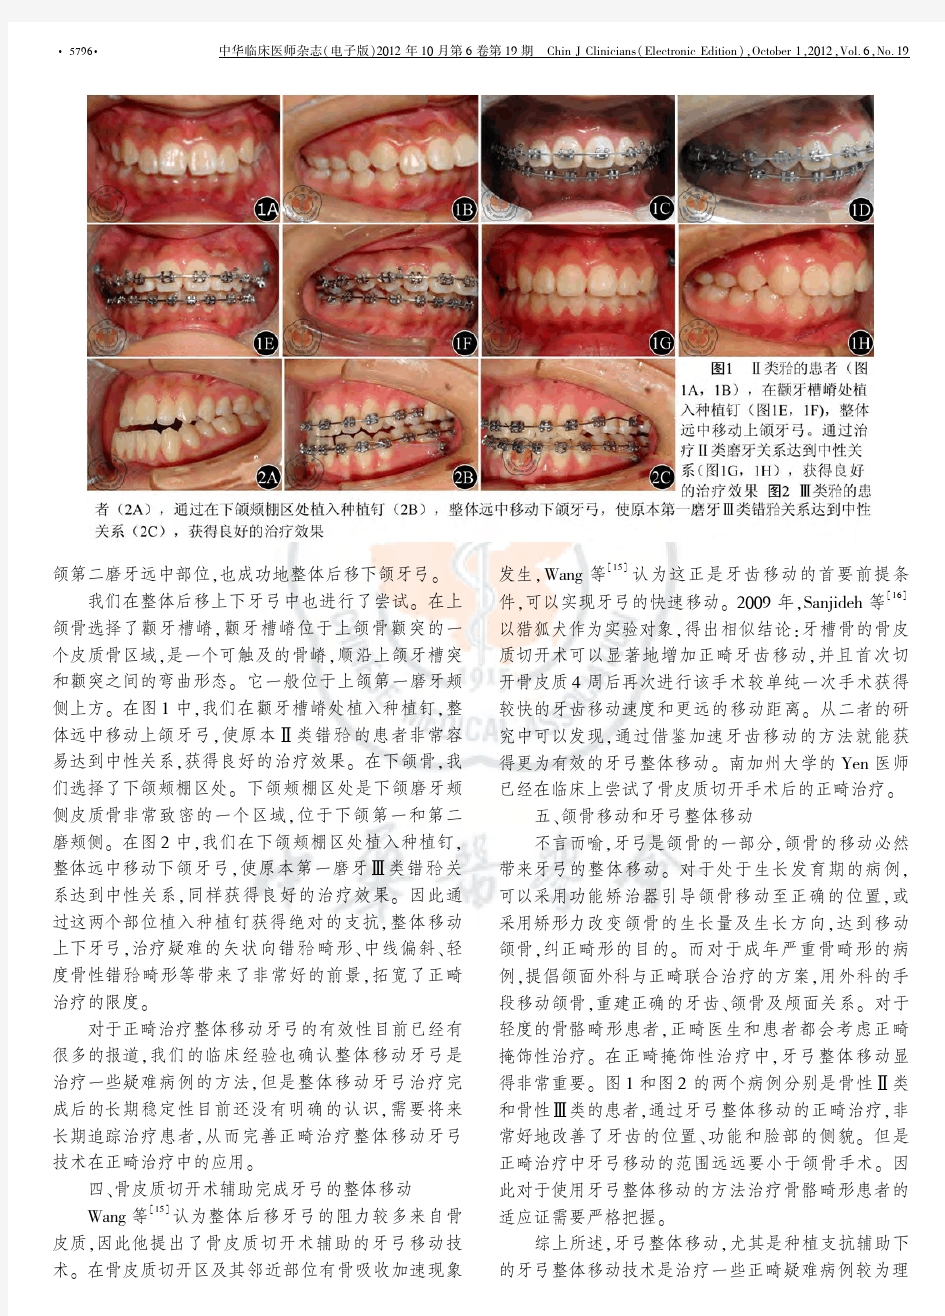 正畸治疗中的牙弓整体移动 - 中华医学会系列杂志 医学专业